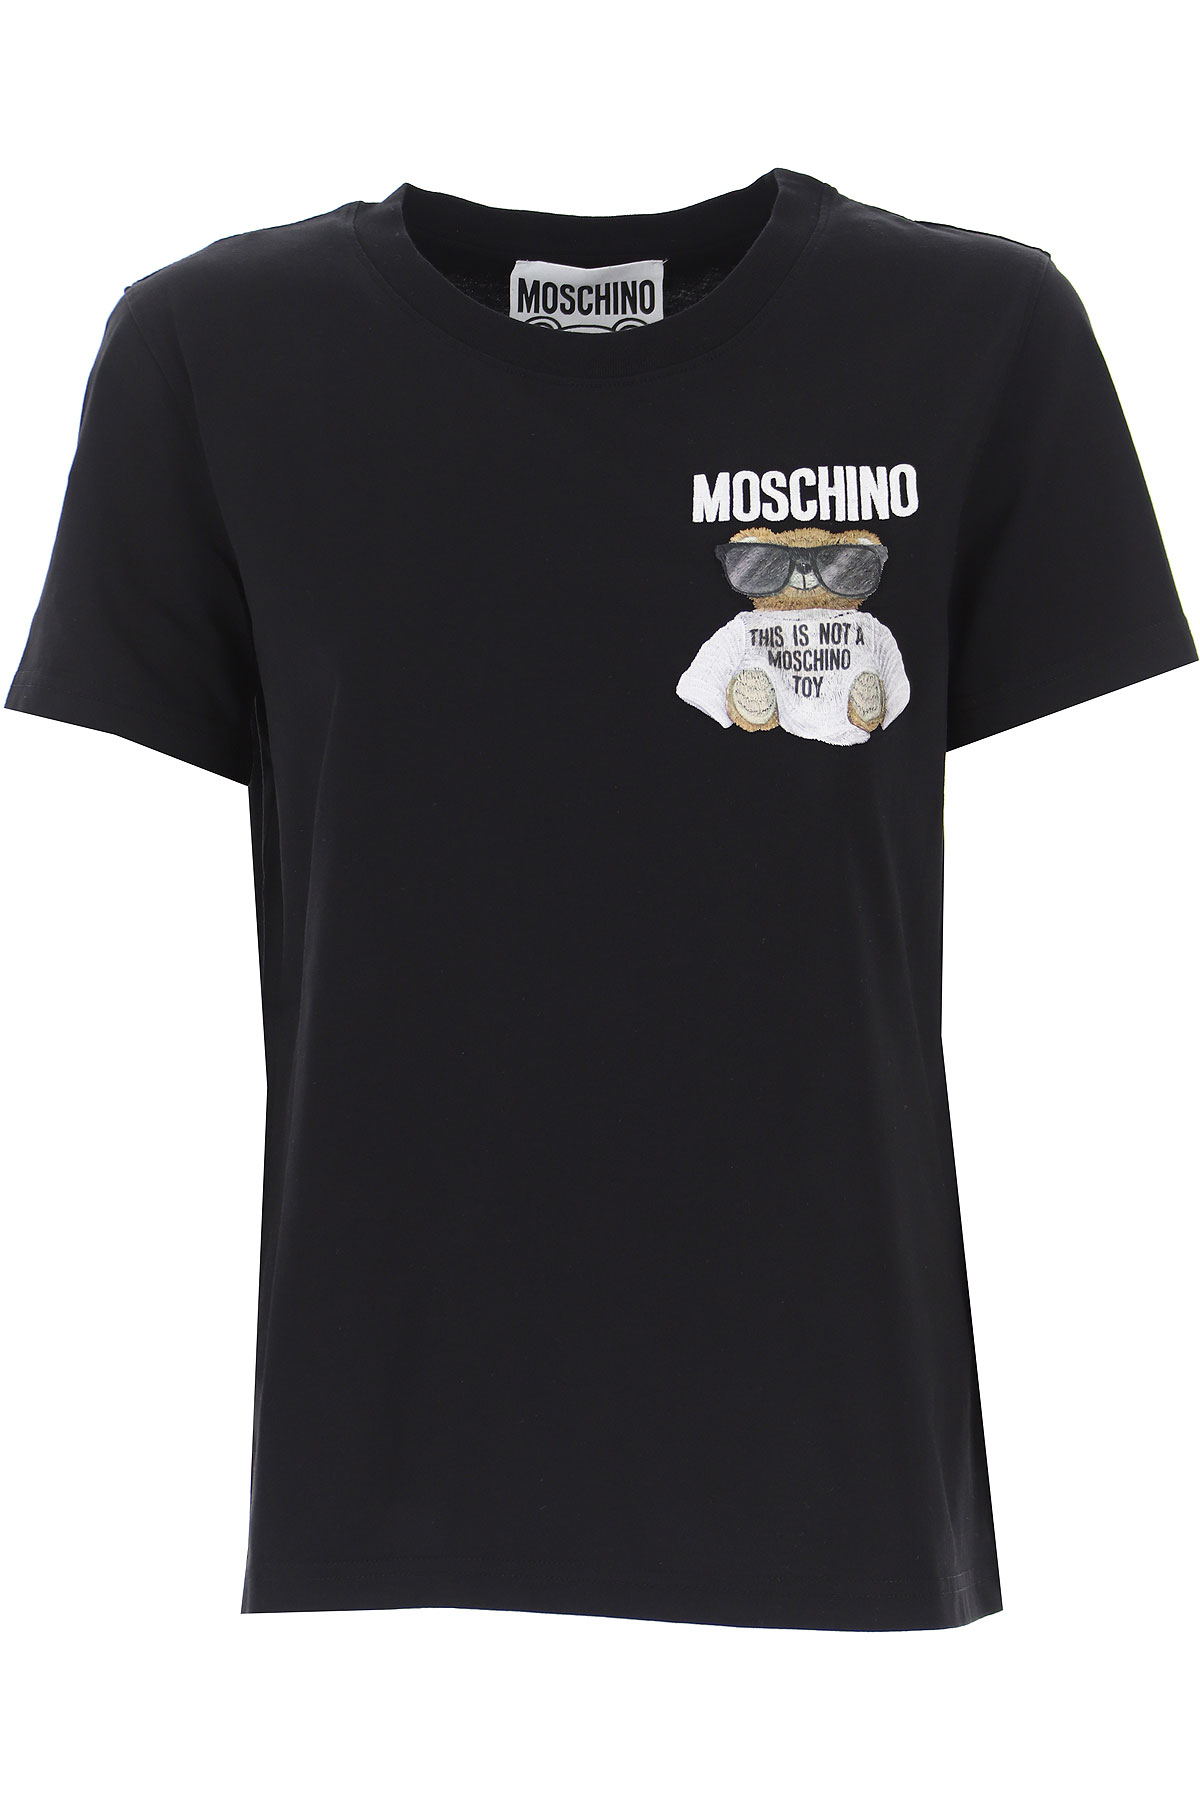 moschino t shirt sale womens